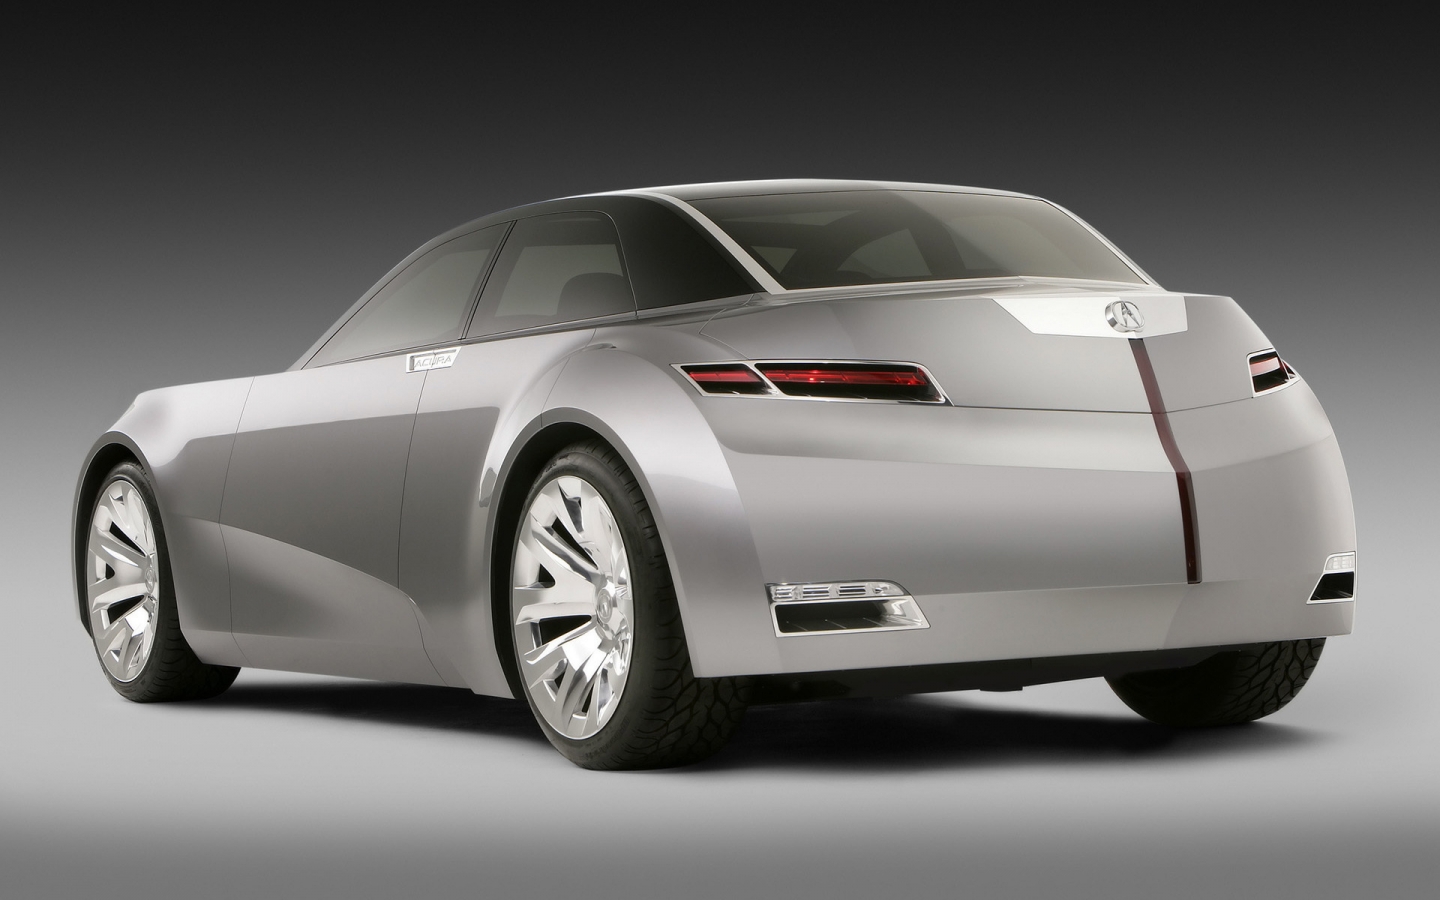 Acura Sedan Concept Rear for 1440 x 900 widescreen resolution